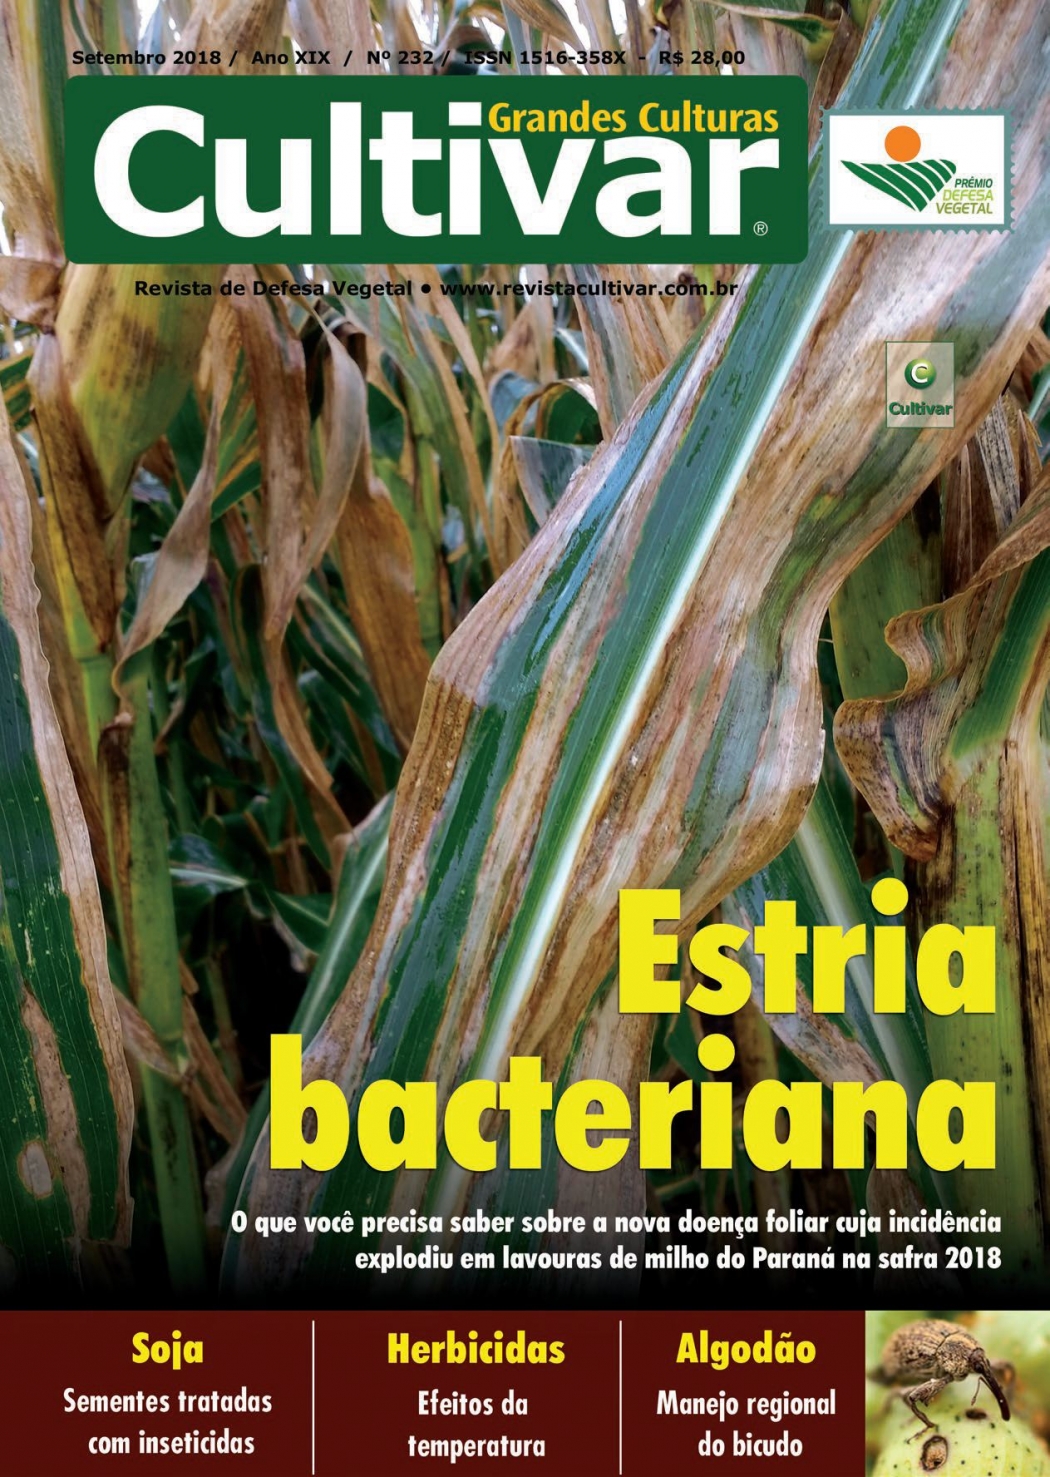 Estria bacteriana - Nova doença em milho